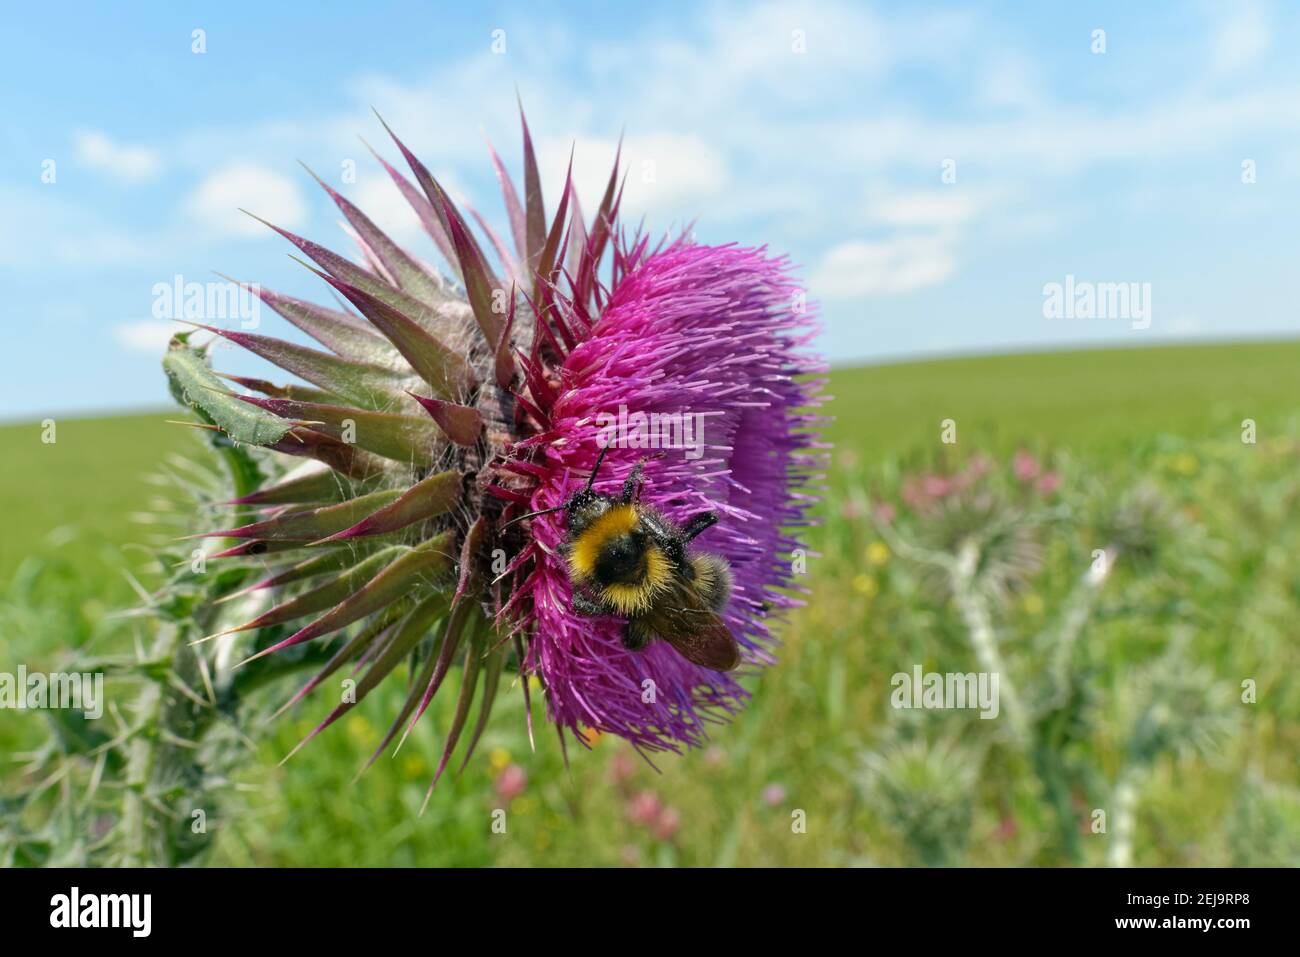 Giardino bumblebee (Hortorum Bombus) visitando nodding / Musk Thistle (nutans Carduus) in polline e nettare flower mix striscia confinante con un Barley raccolto, Regno Unito. Foto Stock